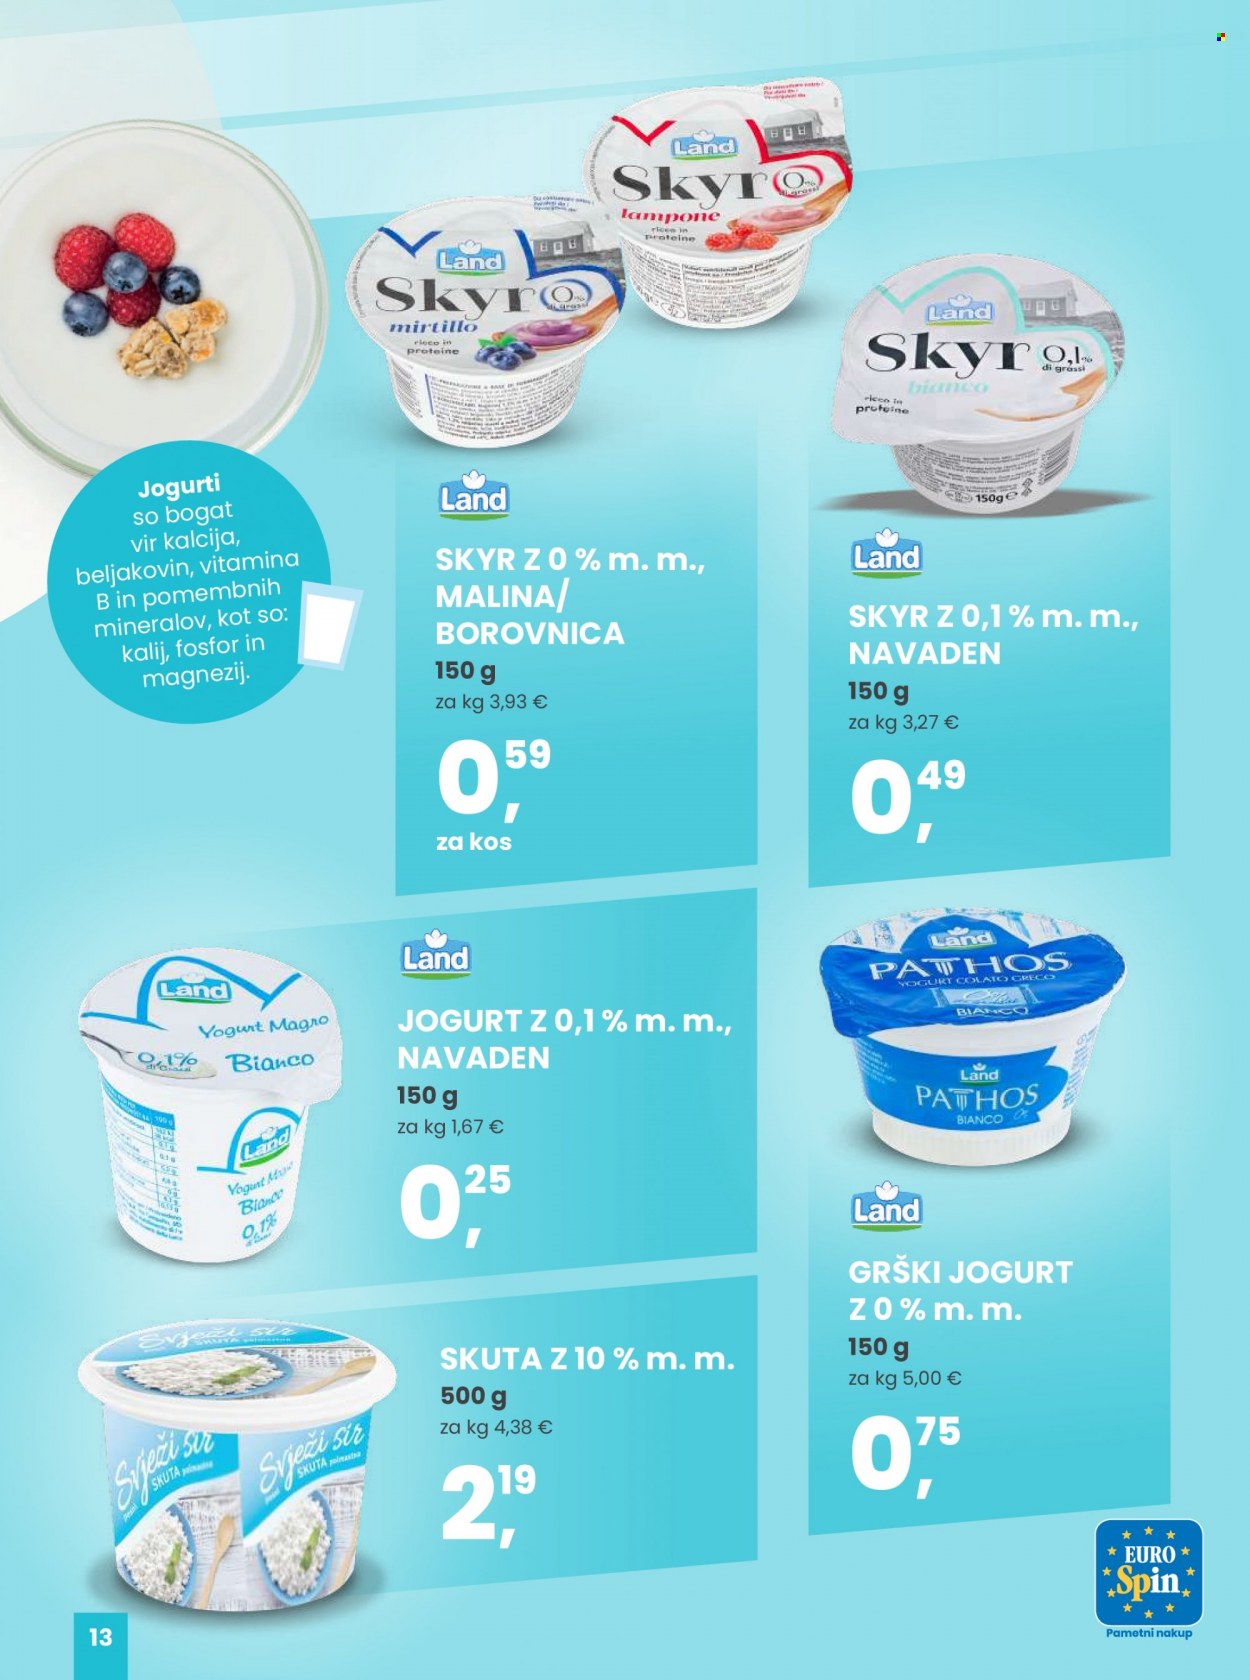 EuroSpin katalog - Ponudba izdelkov - sir, skuta, grški jogurt, jogurt, Skyr, sani. Stran 13.